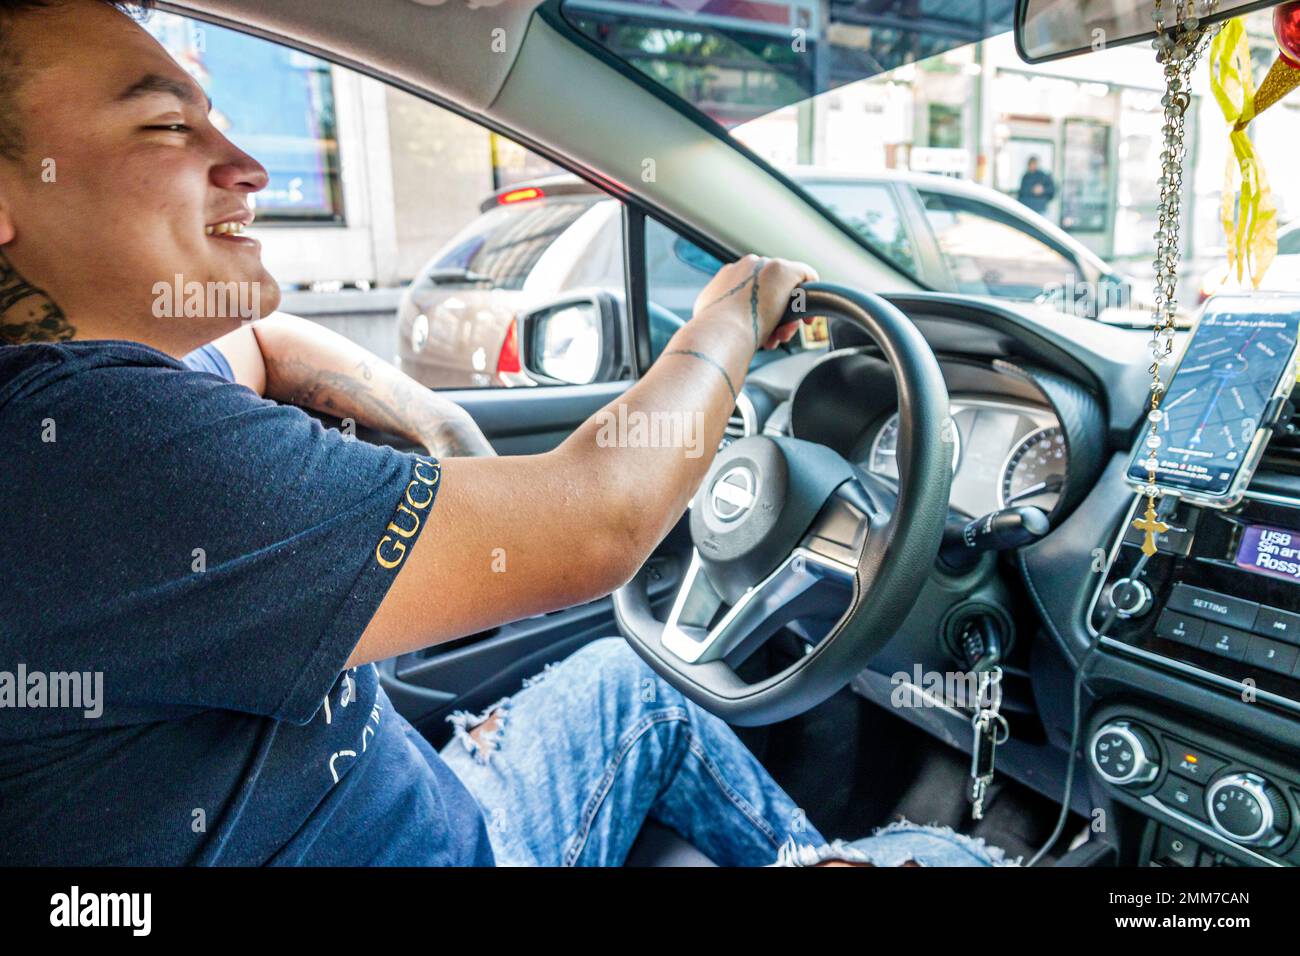 Mexico, uber conducteur conduite service de transport en voiture, homme hommes, adultes, résidents, intérieur, smartphone smartphones, smartphone i Banque D'Images